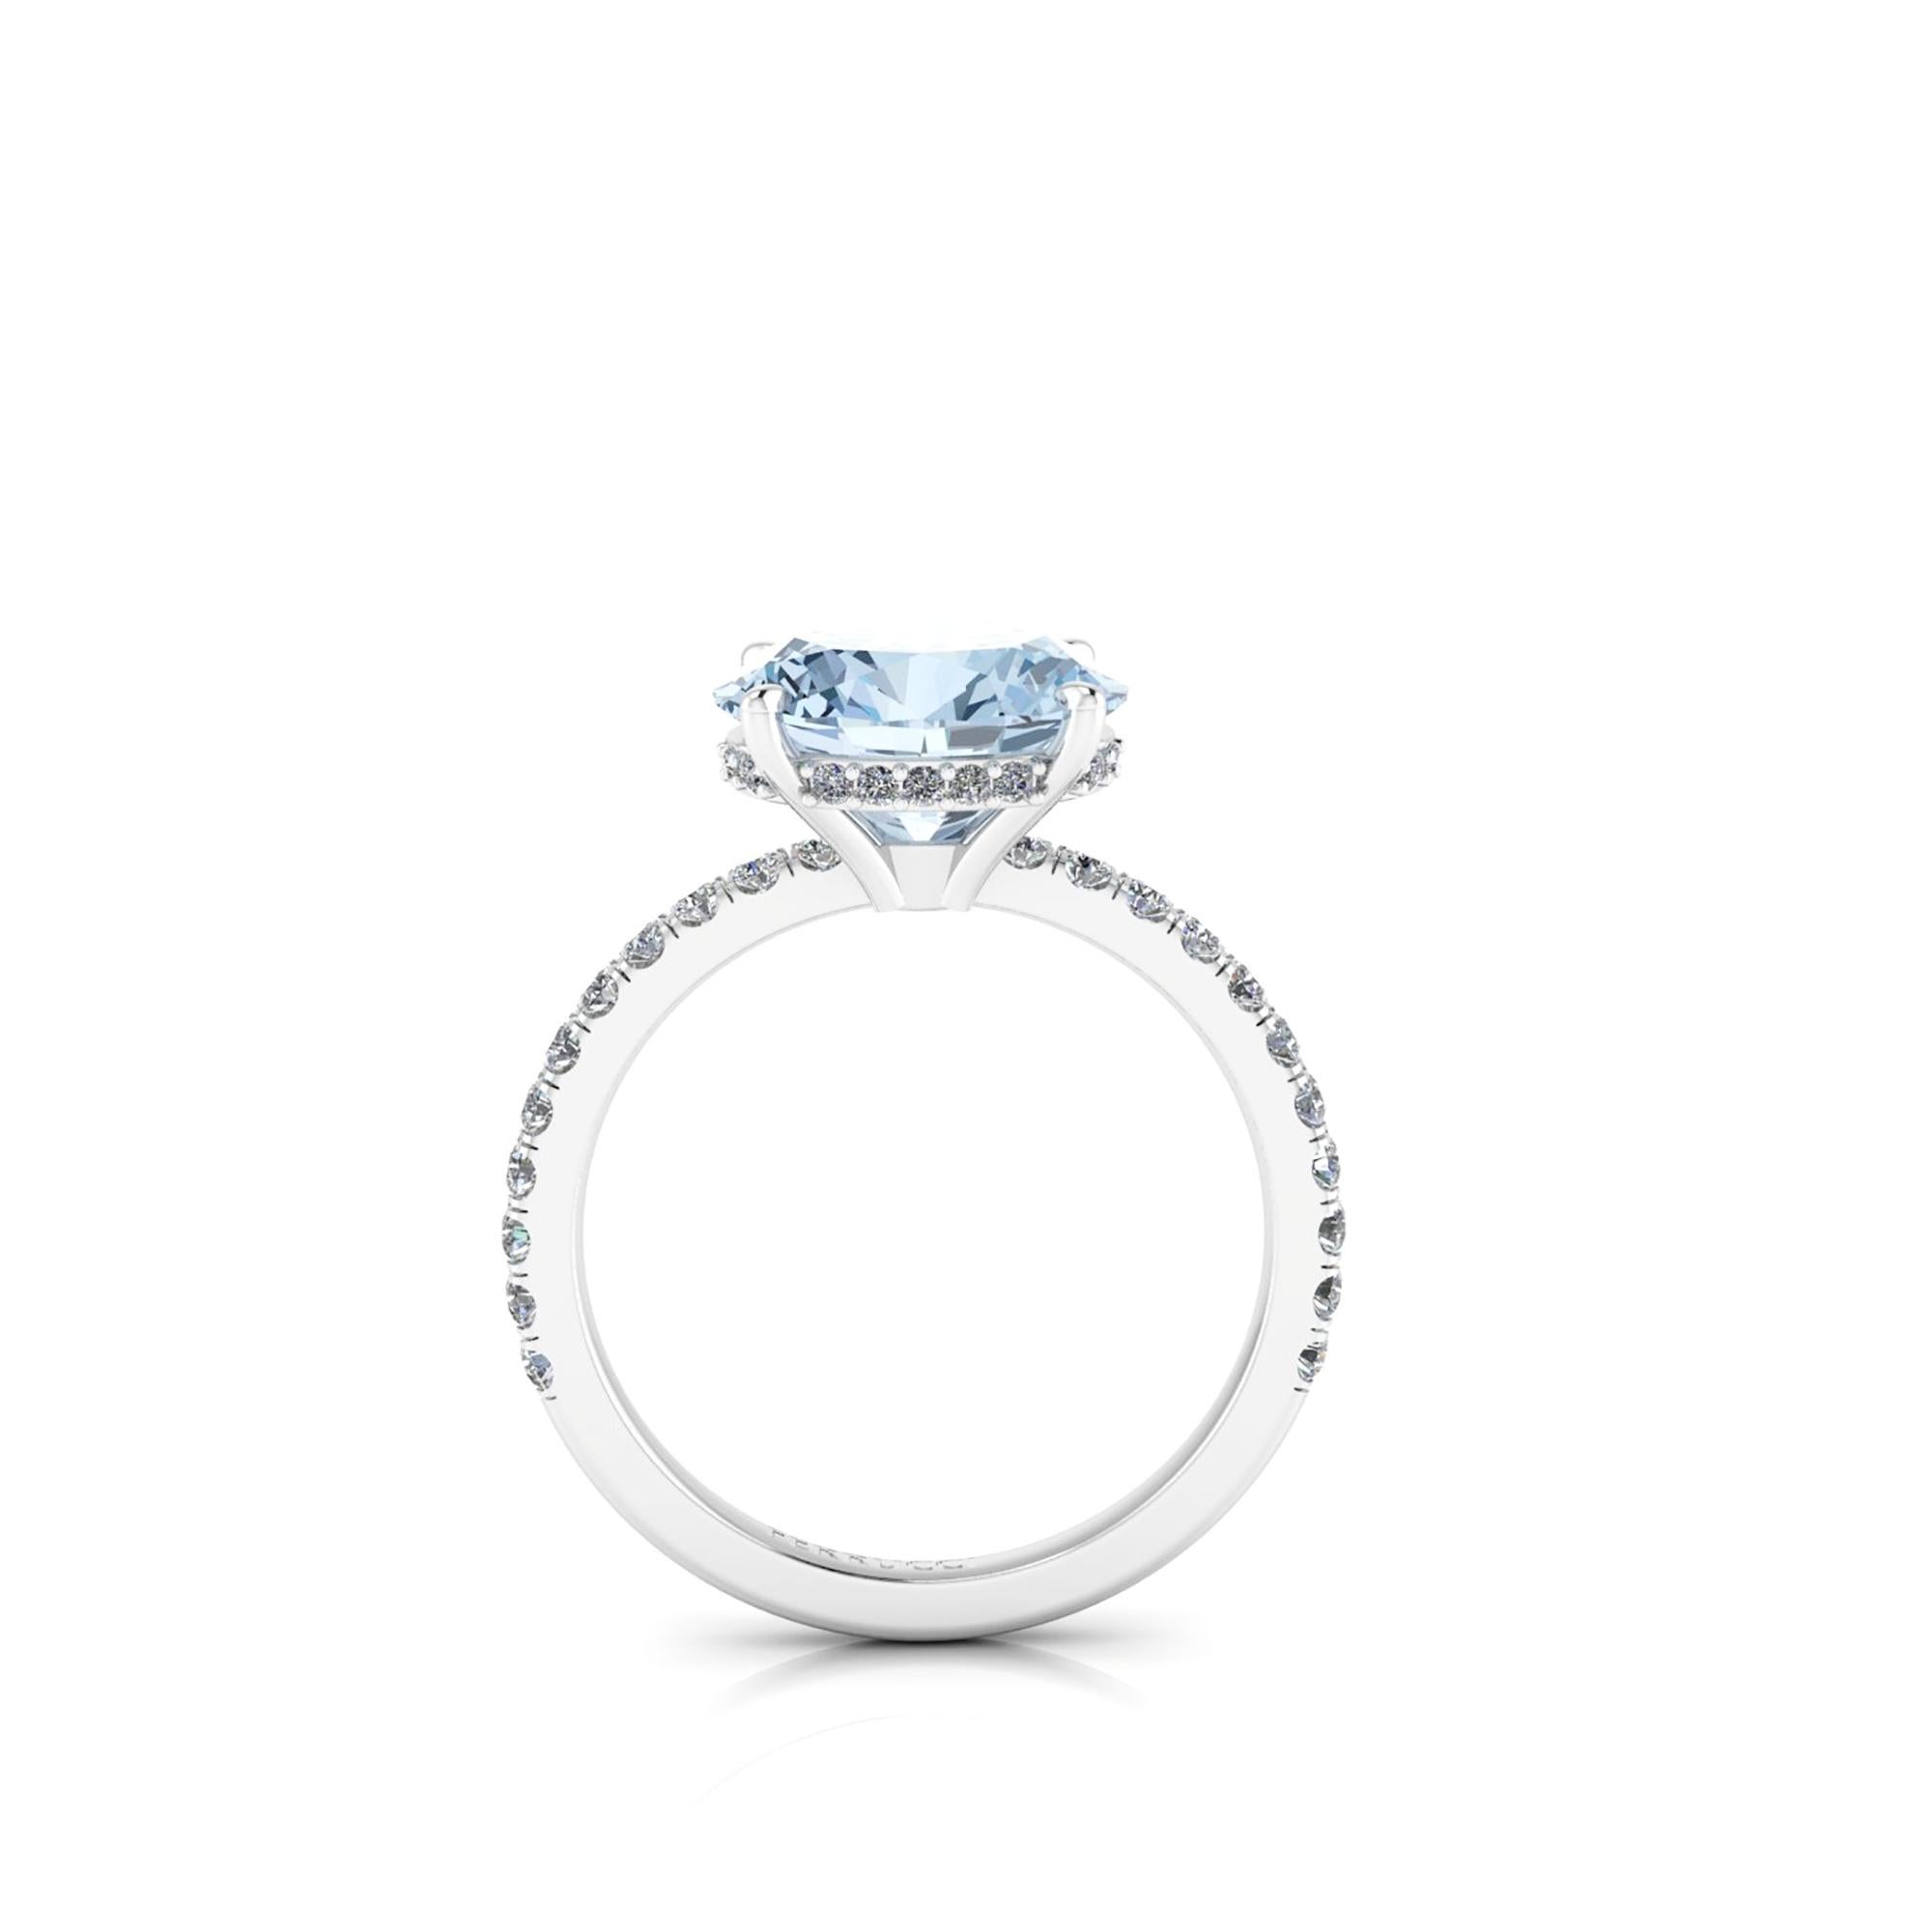 2.5 carat aquamarine ring